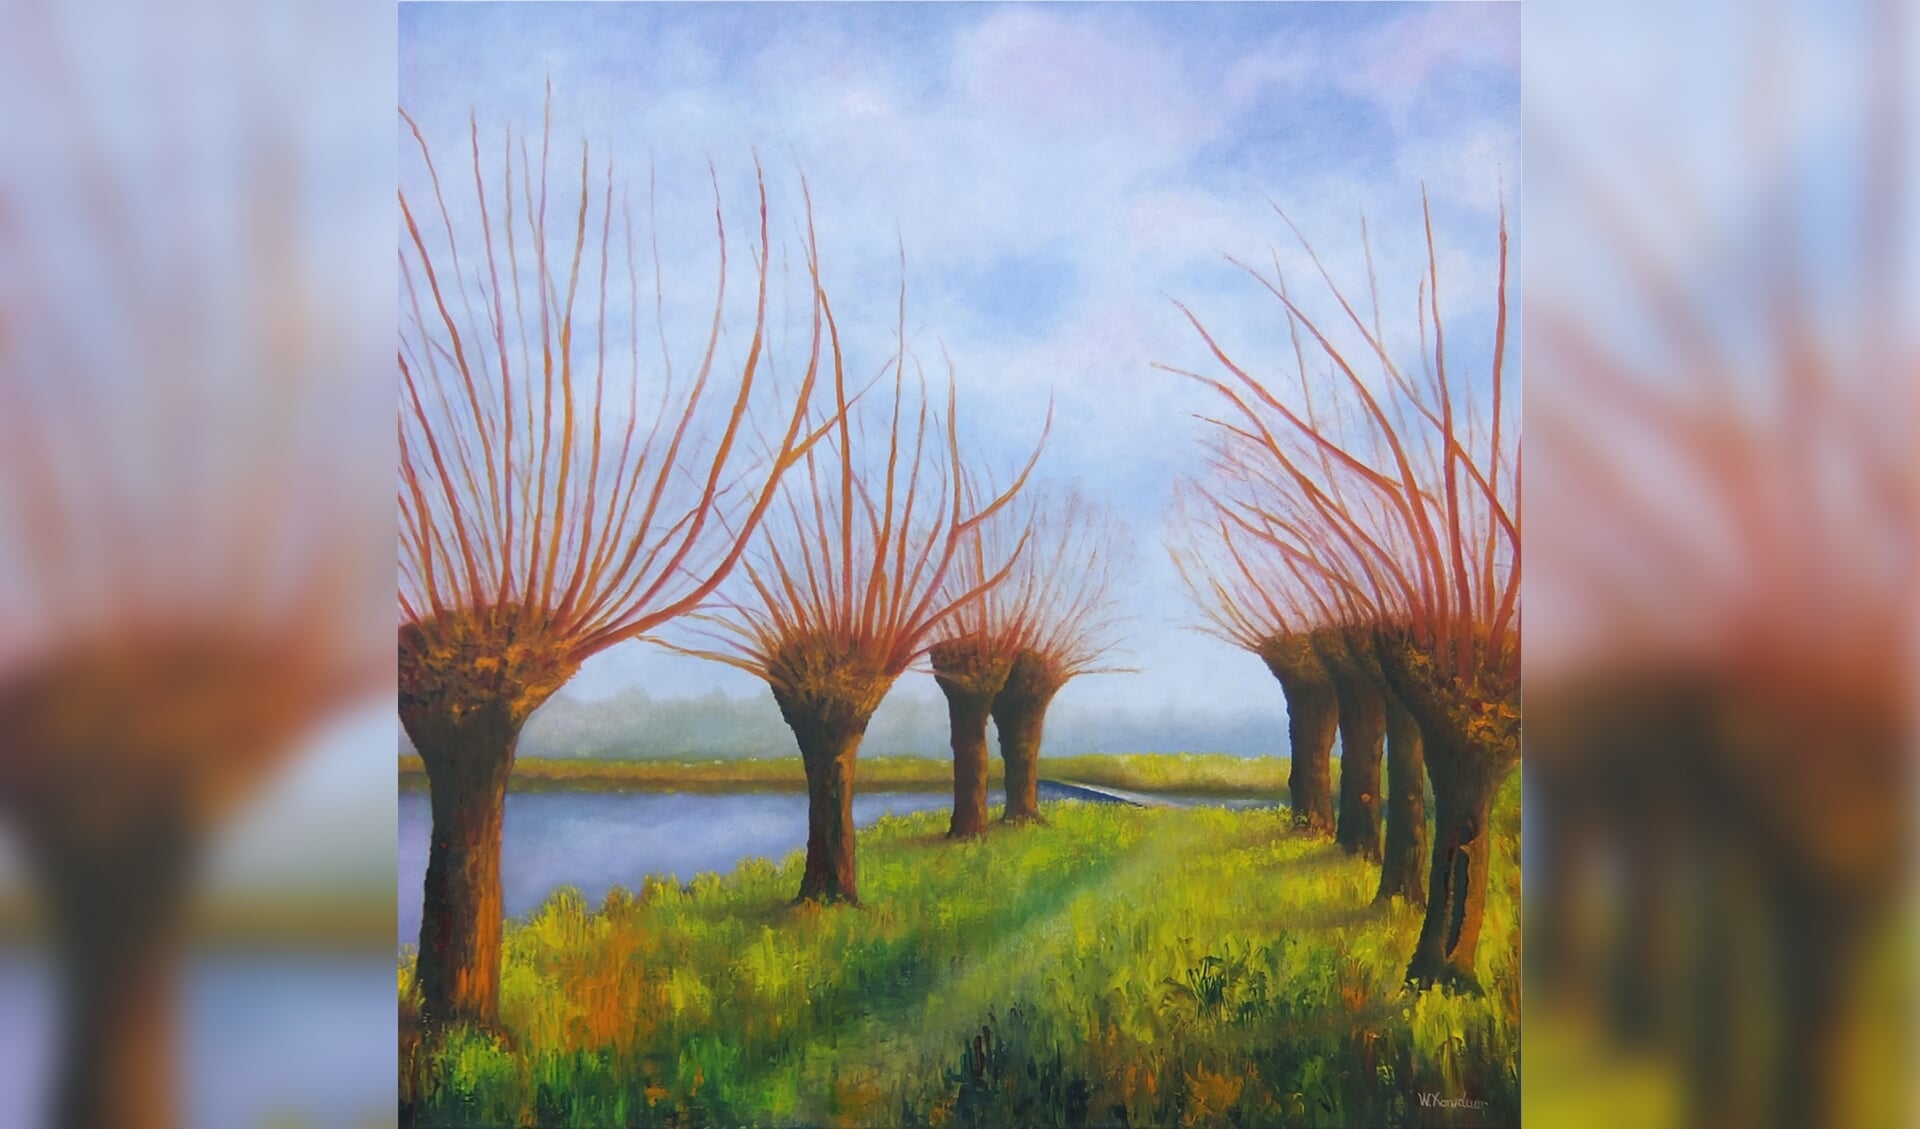 'Knotwilgen in de polder' van Wim Komduur. Het is een van de schilderijen die te zien zijn.